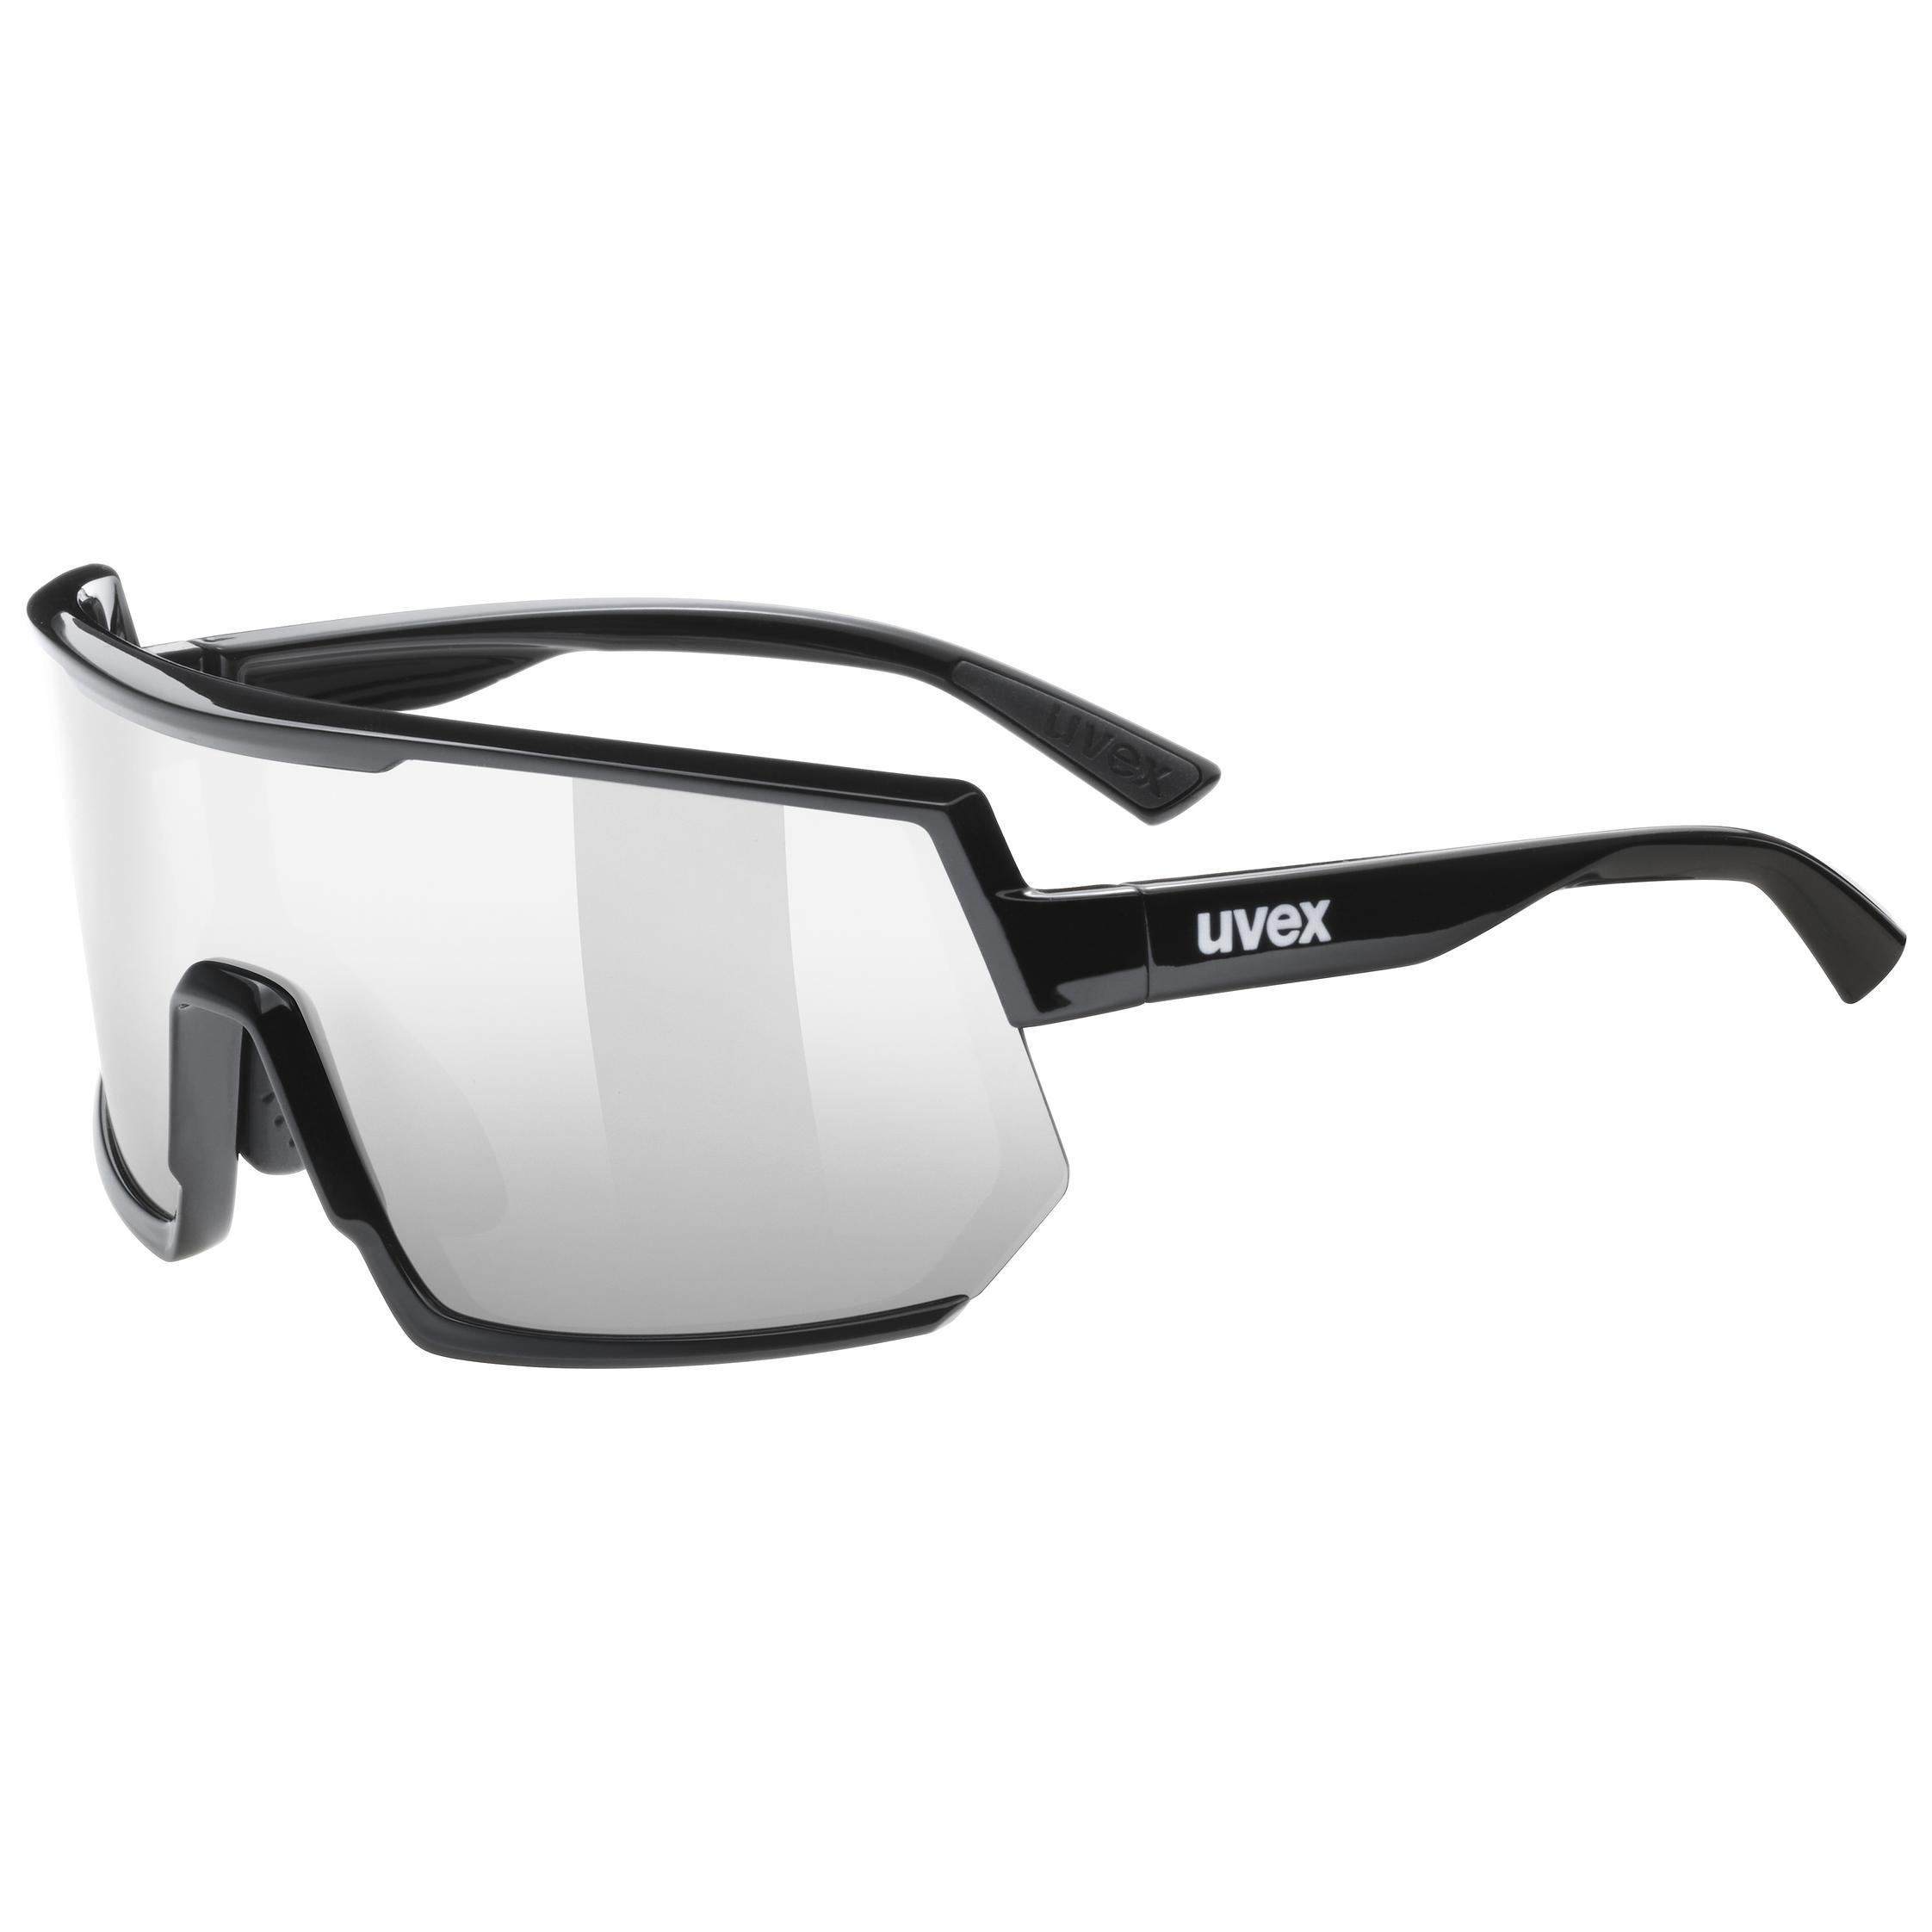 Uvex Sportstyle 221 Fahrrad Brille schwarz/gelb/mirror gelb 